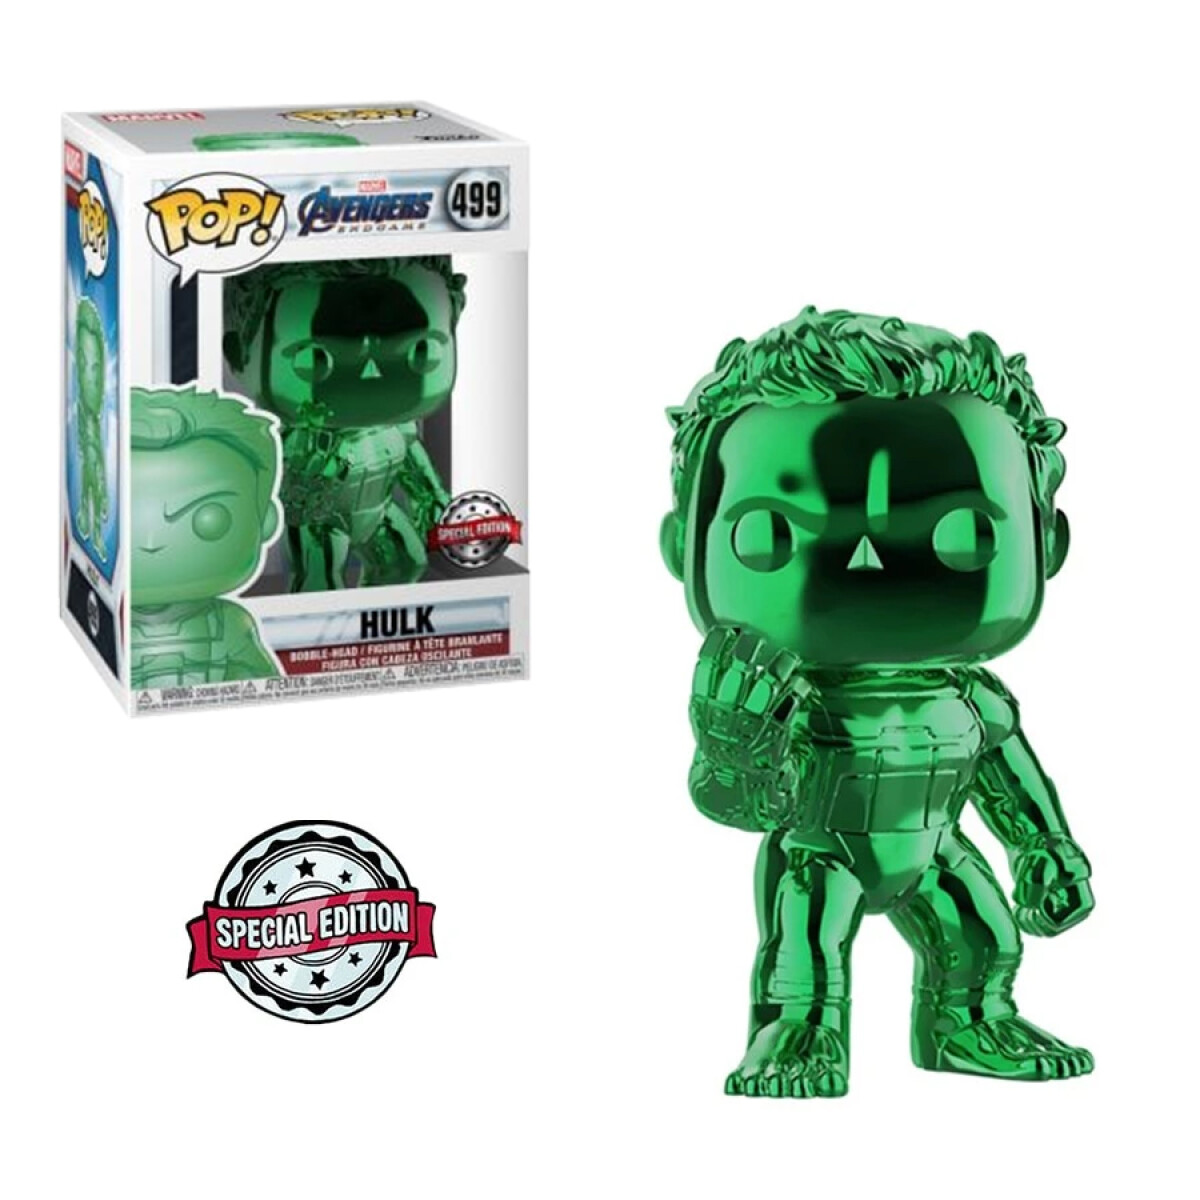 Hulk · Marvel Avengers (Green Chrome) [Exclusivo] - 499 